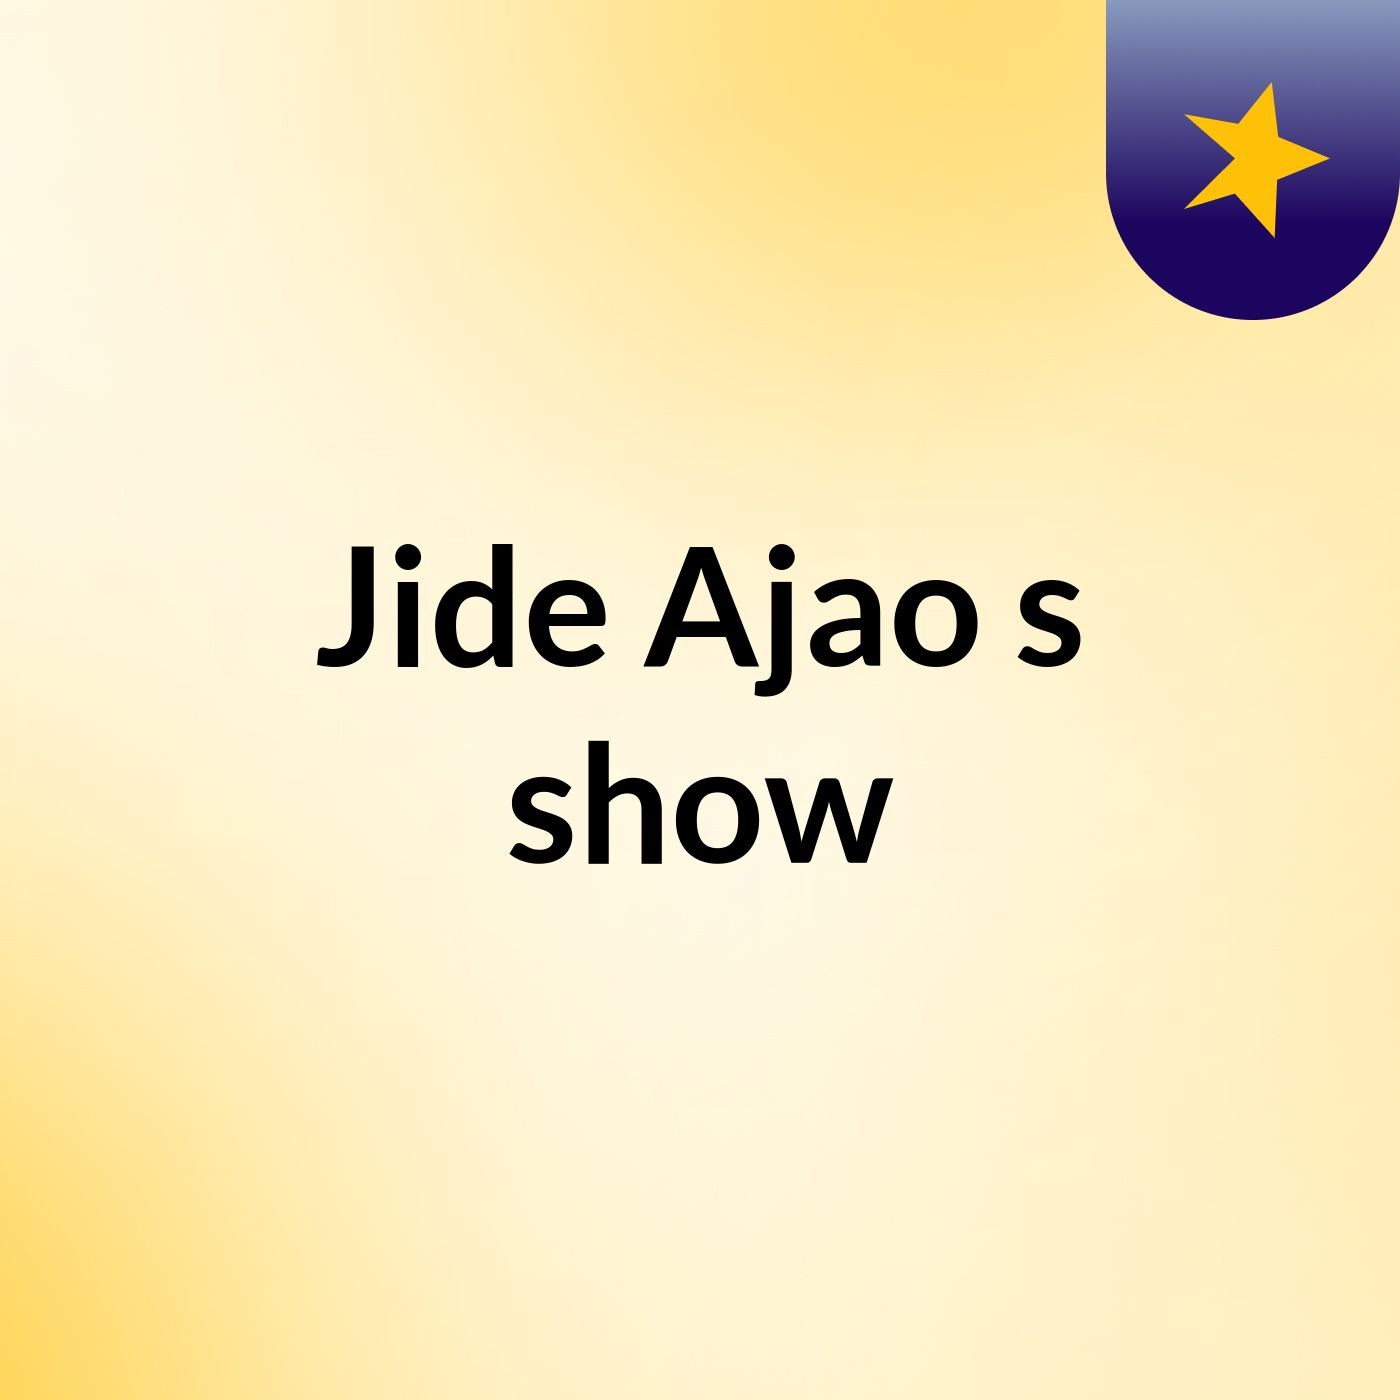 Jide Ajao's show